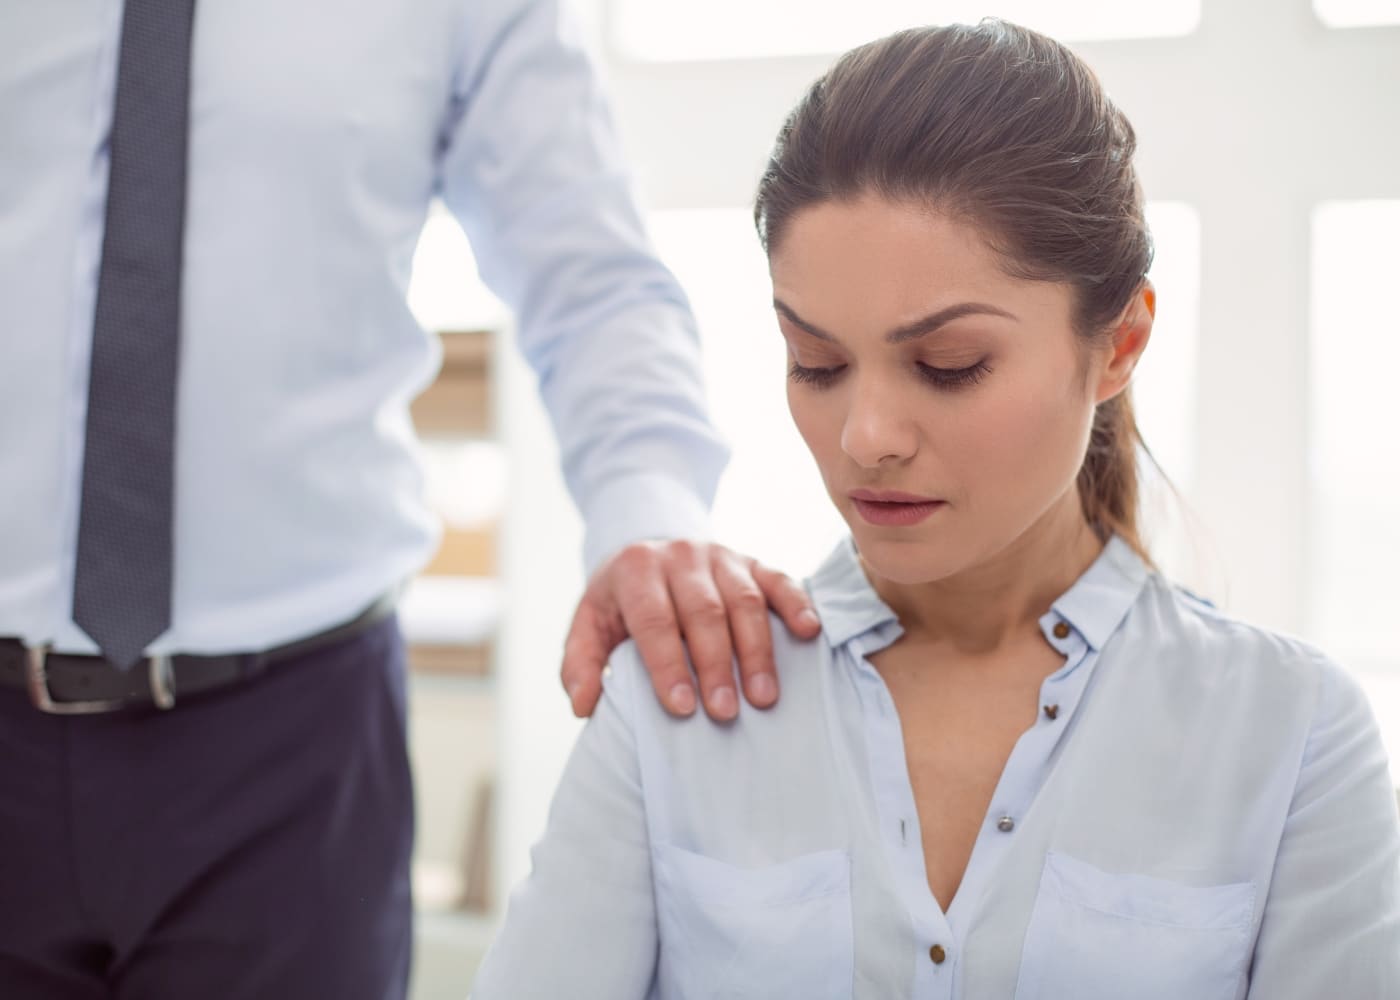 Aprenda a identificar un acoso sexual en el lugar de trabajo